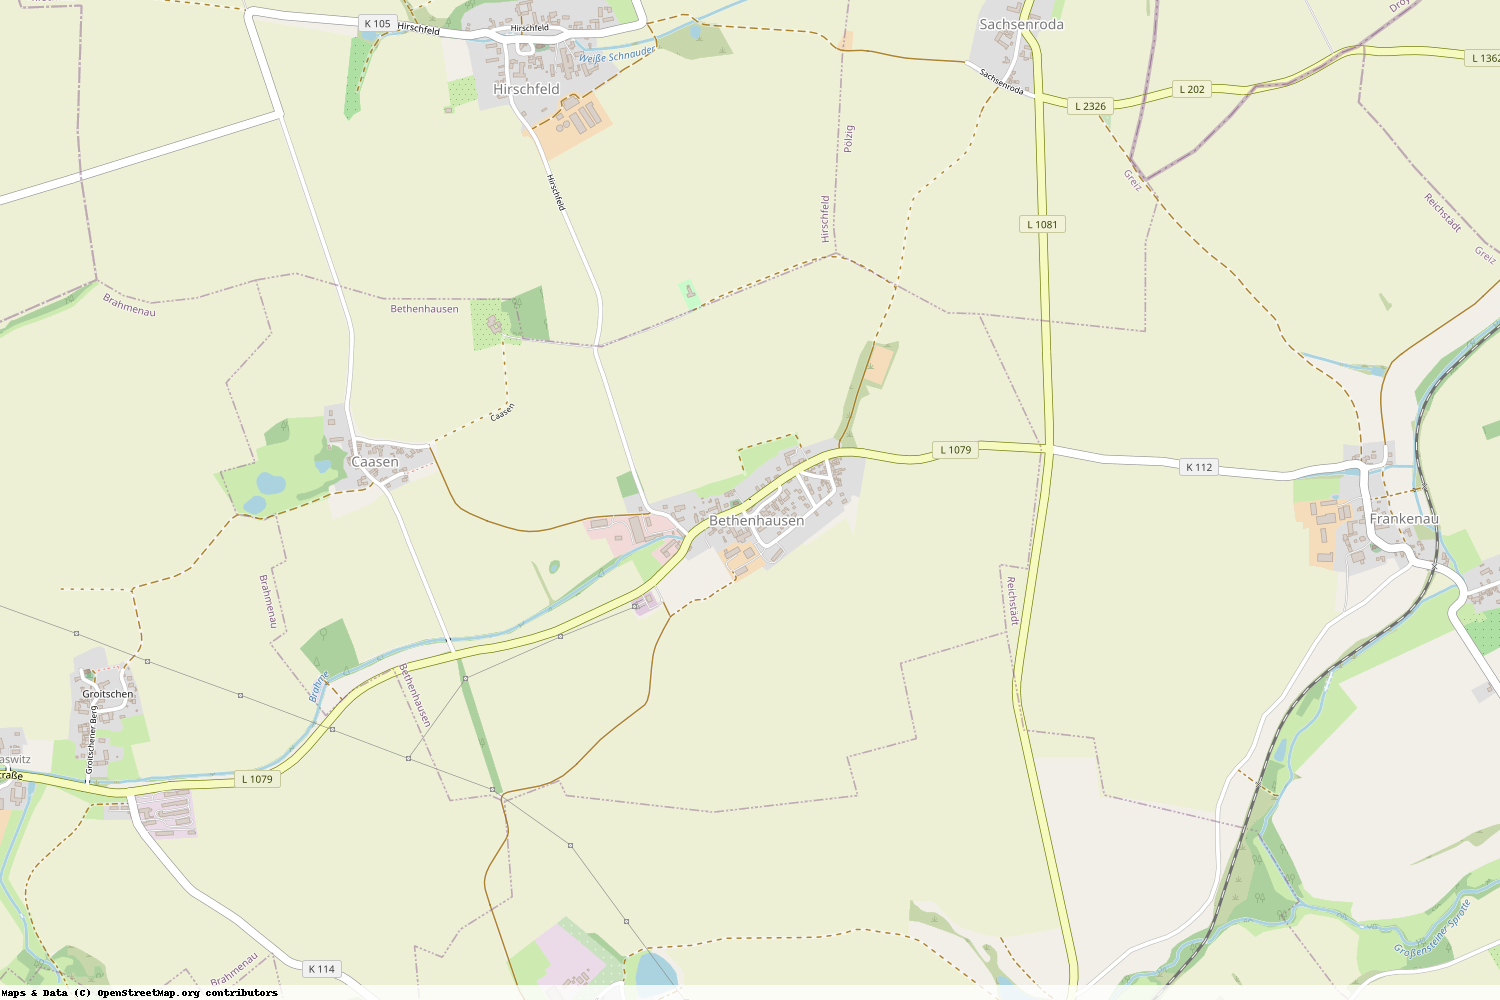 Ist gerade Stromausfall in Thüringen - Greiz - Bethenhausen?